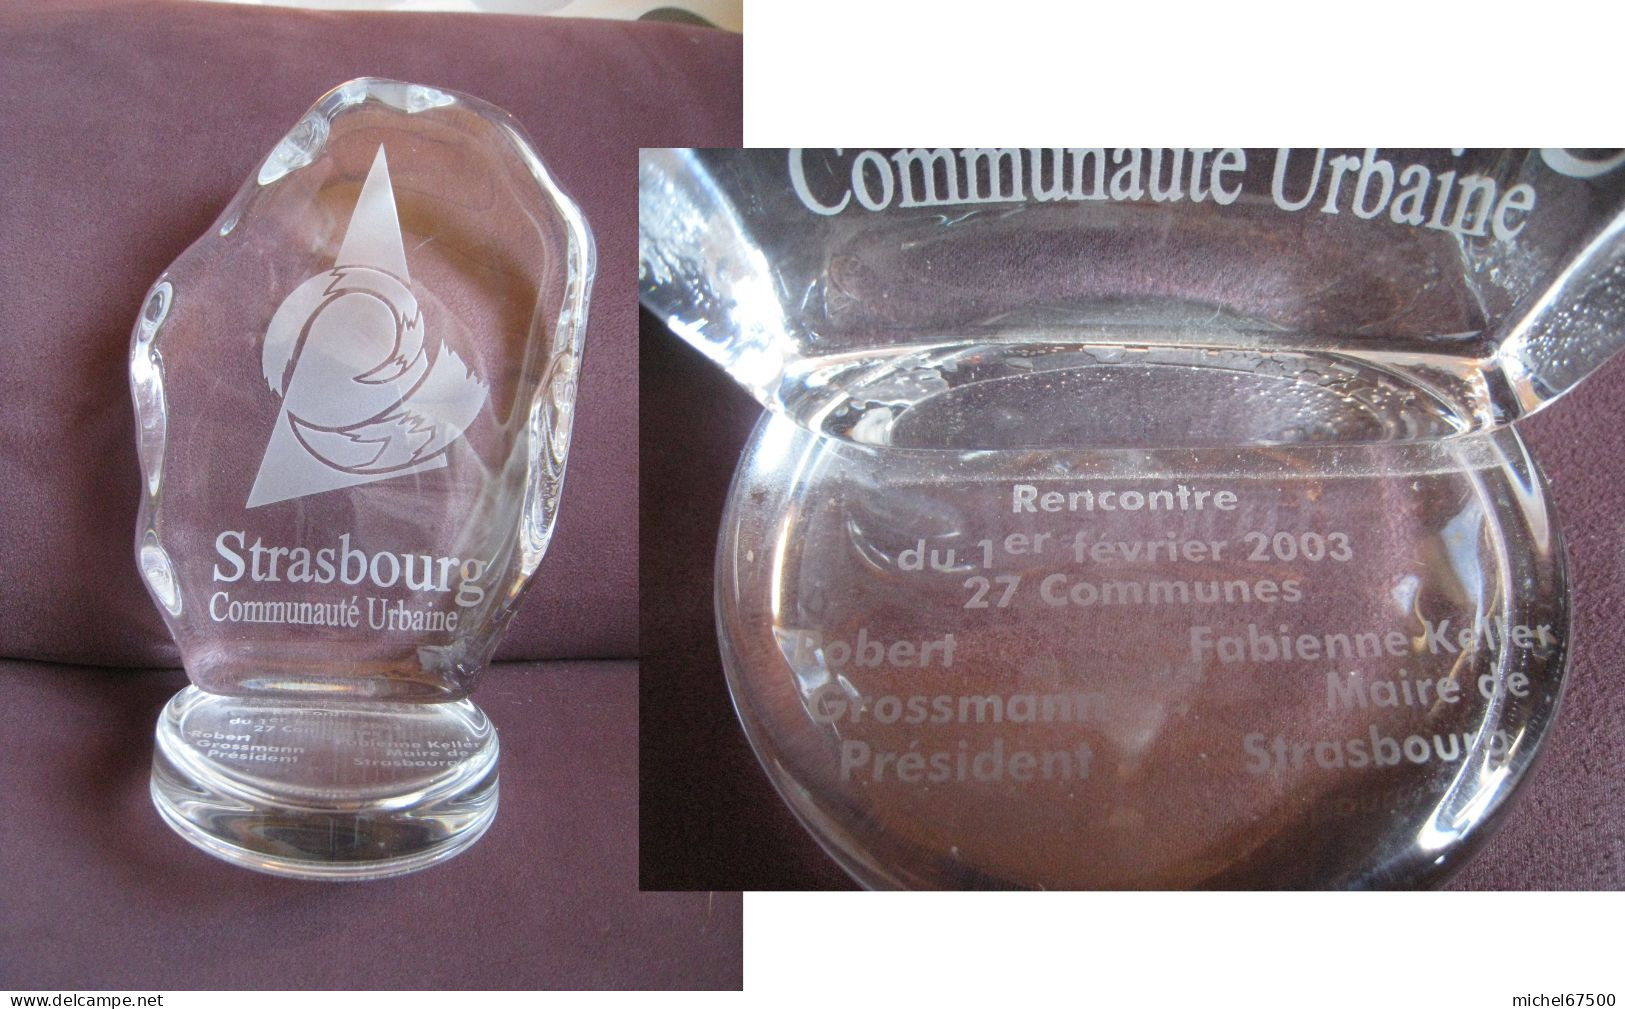 STRASBOURG Communauté Urbaine Objet Commémoratif  Rencontre Du 1er Février 2003 27 Communes - Obj. 'Souvenir De'